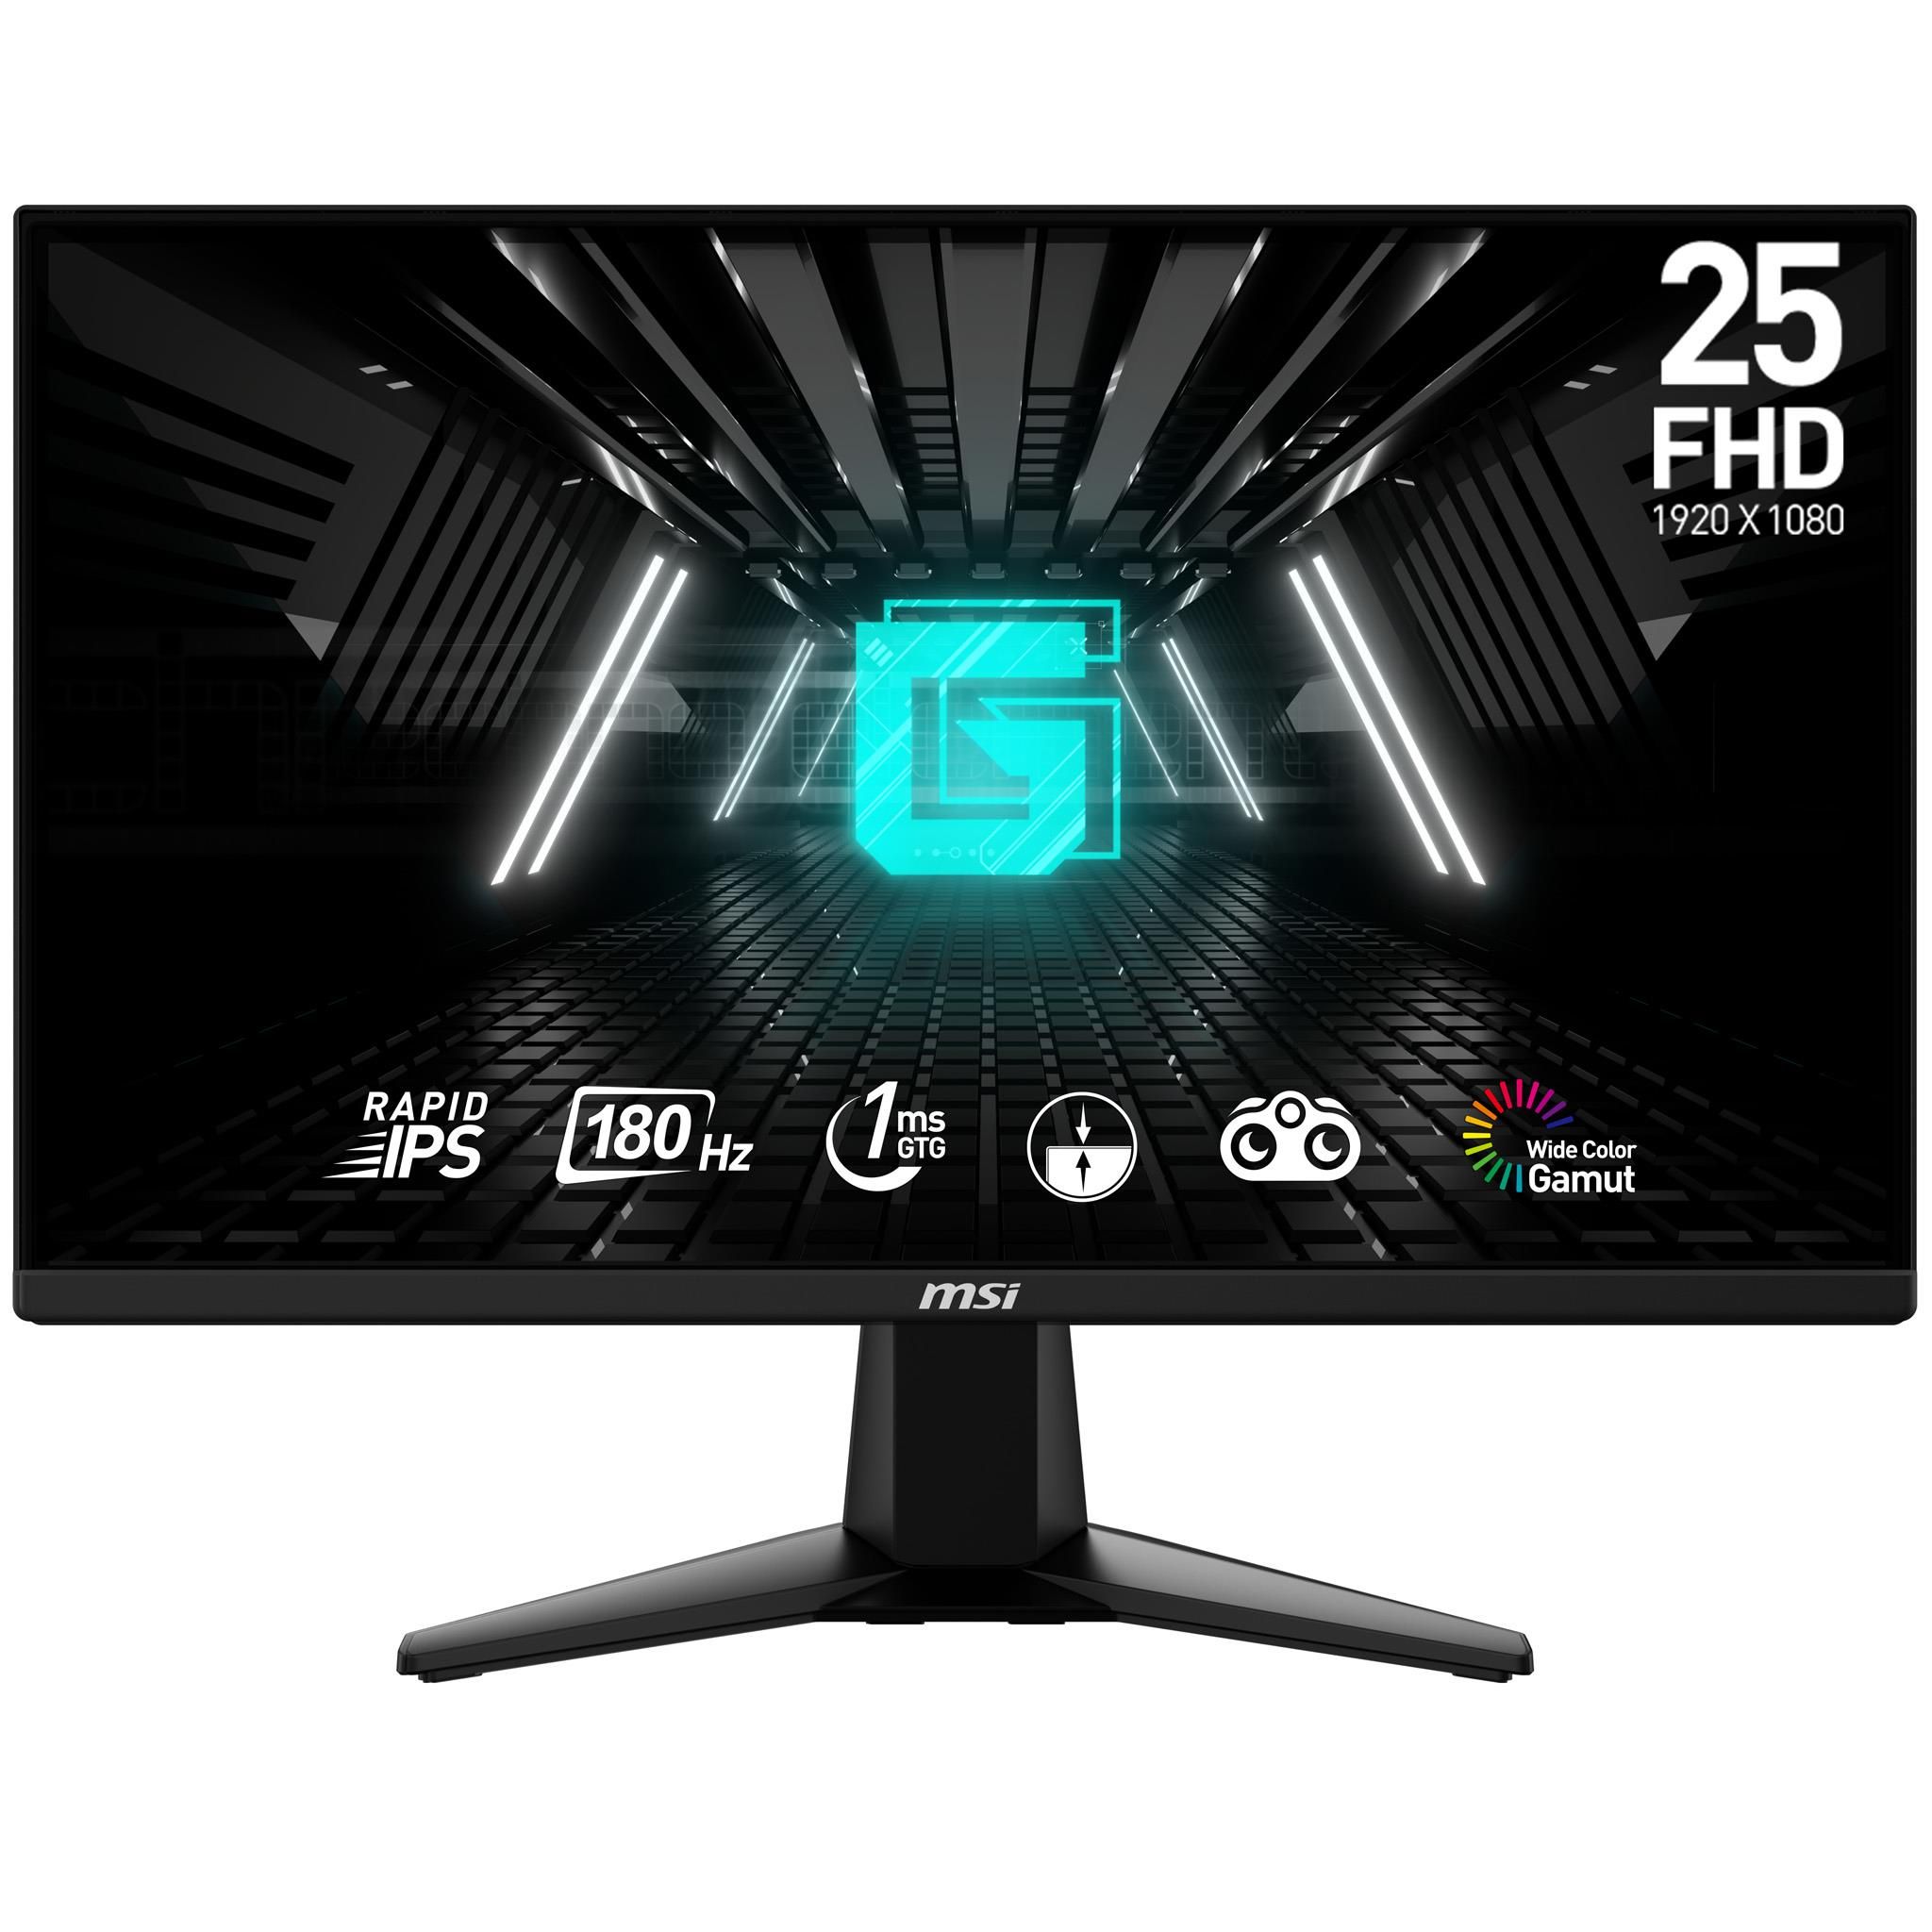 MSI G255F Monitor Gaming